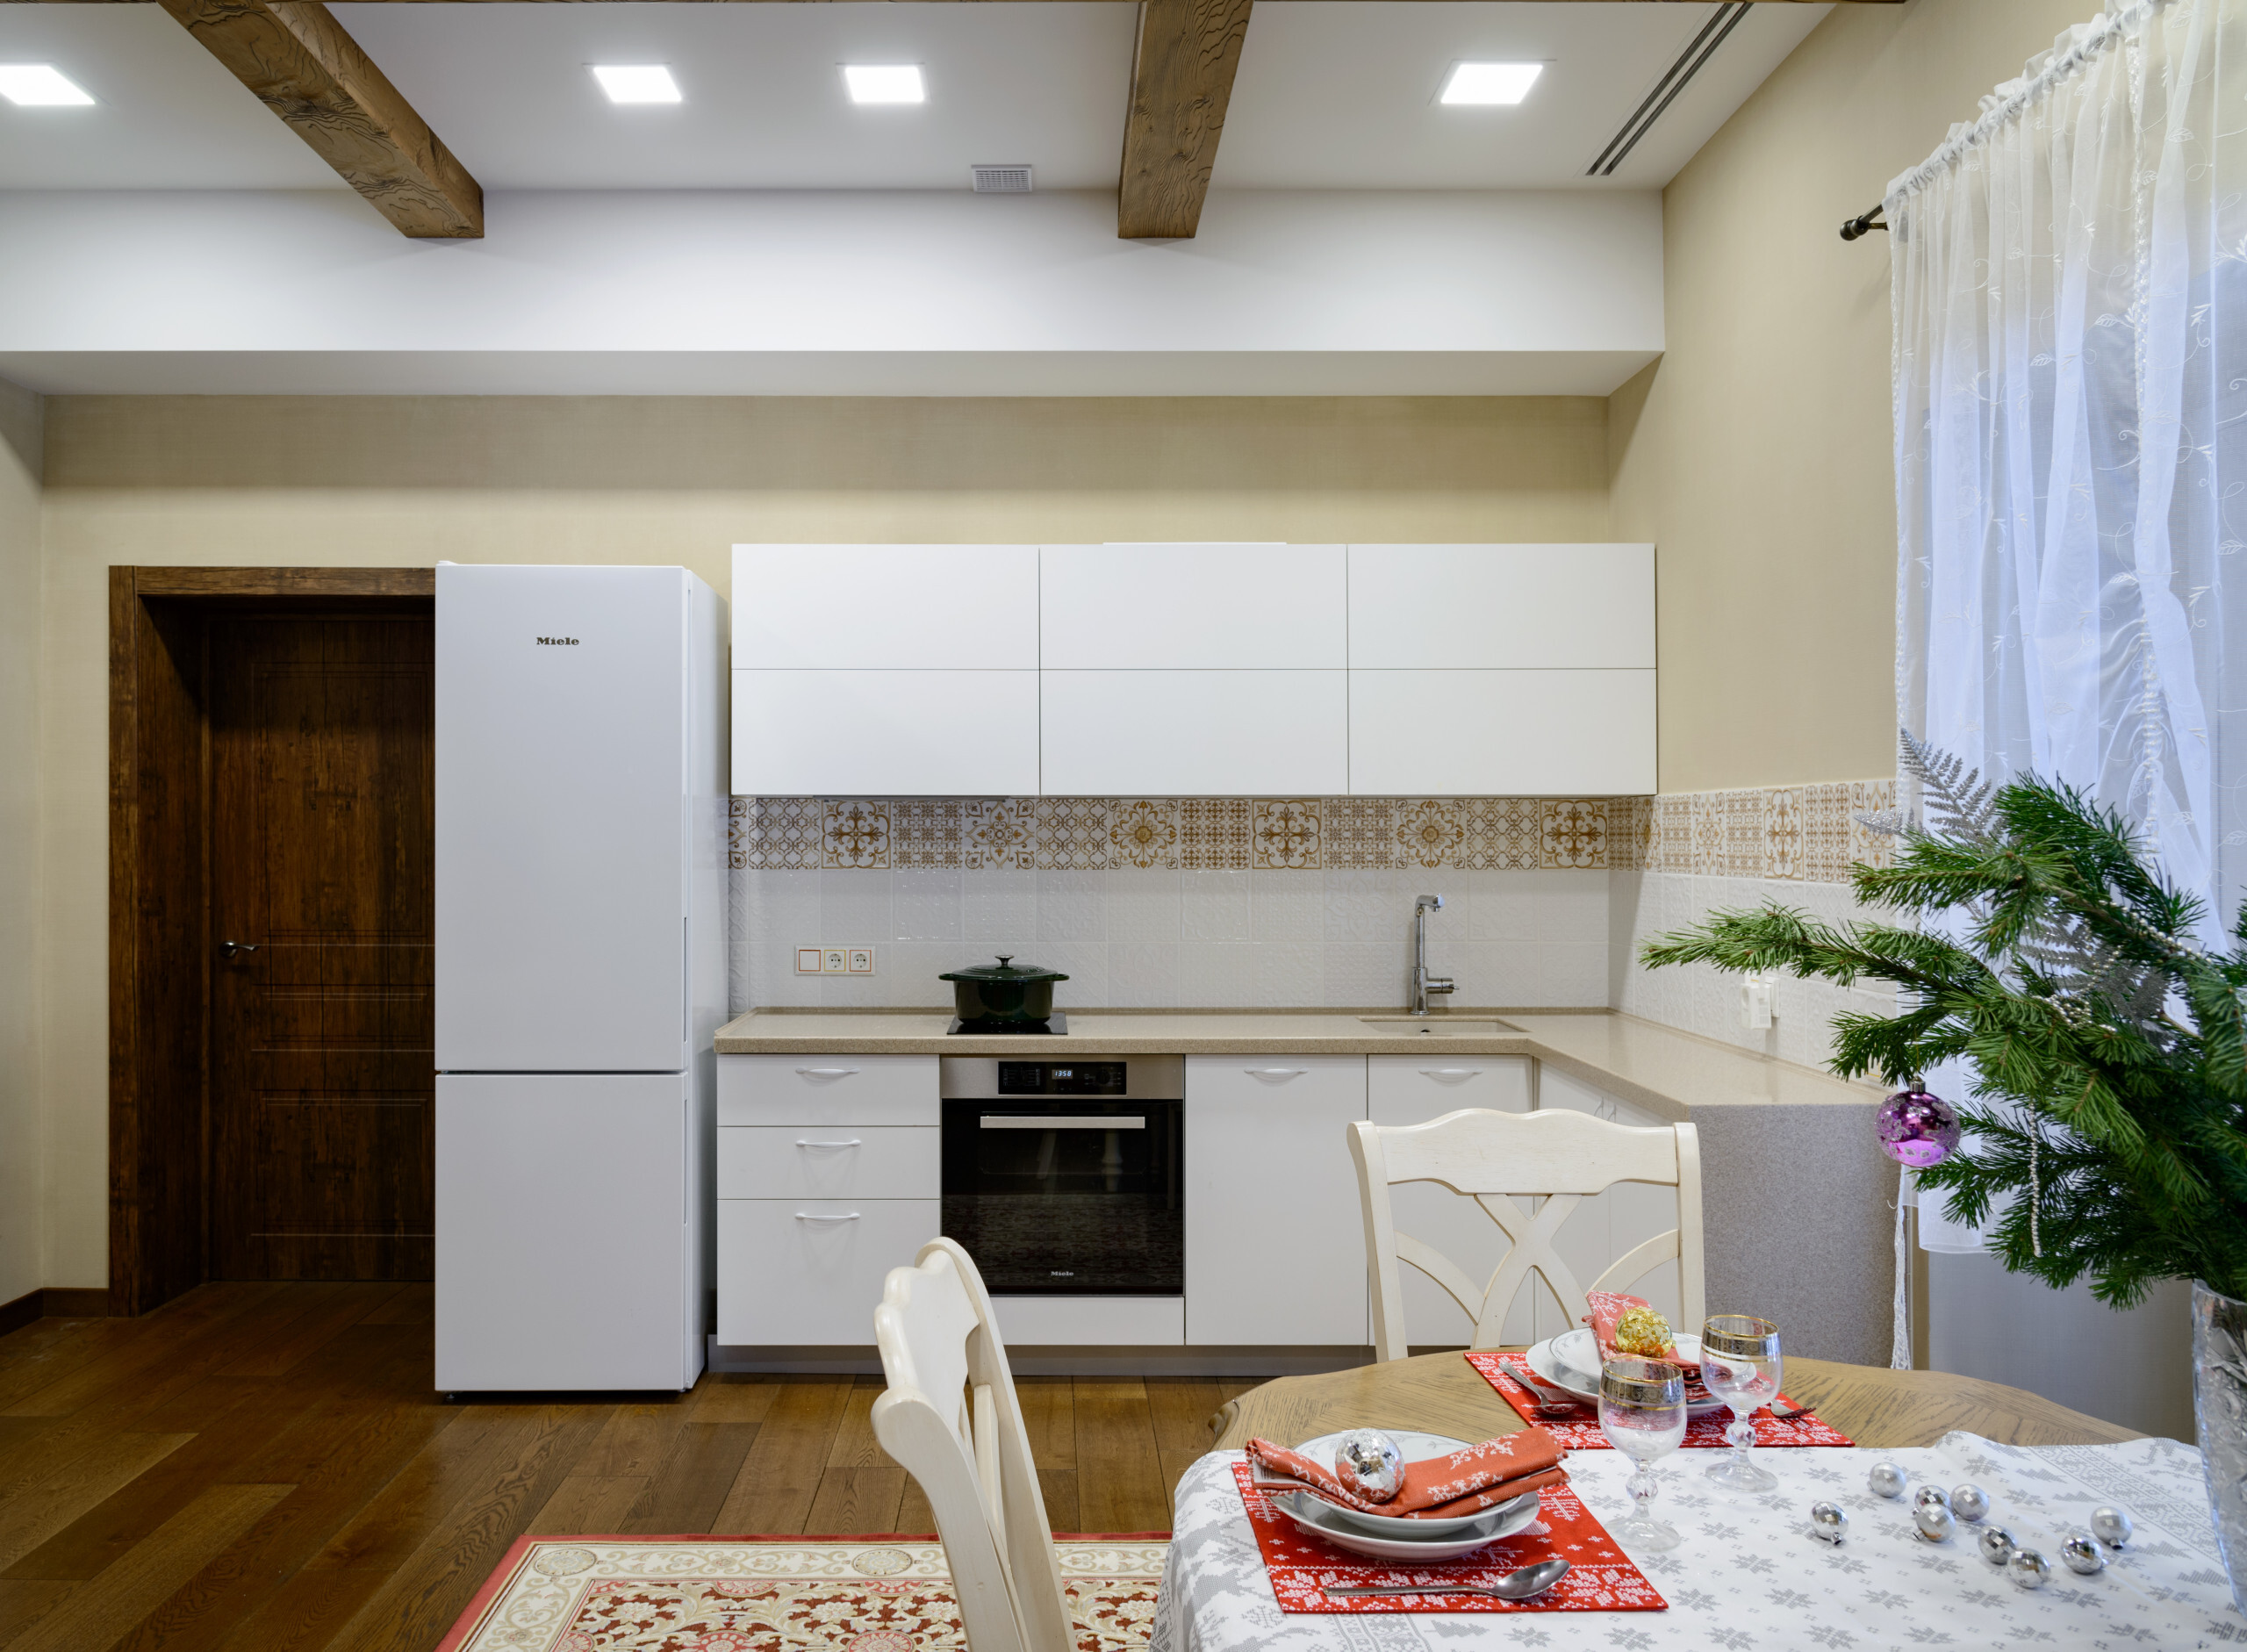 Интерьер кухни cветовыми линиями, подсветкой настенной и подсветкой светодиодной в рустике